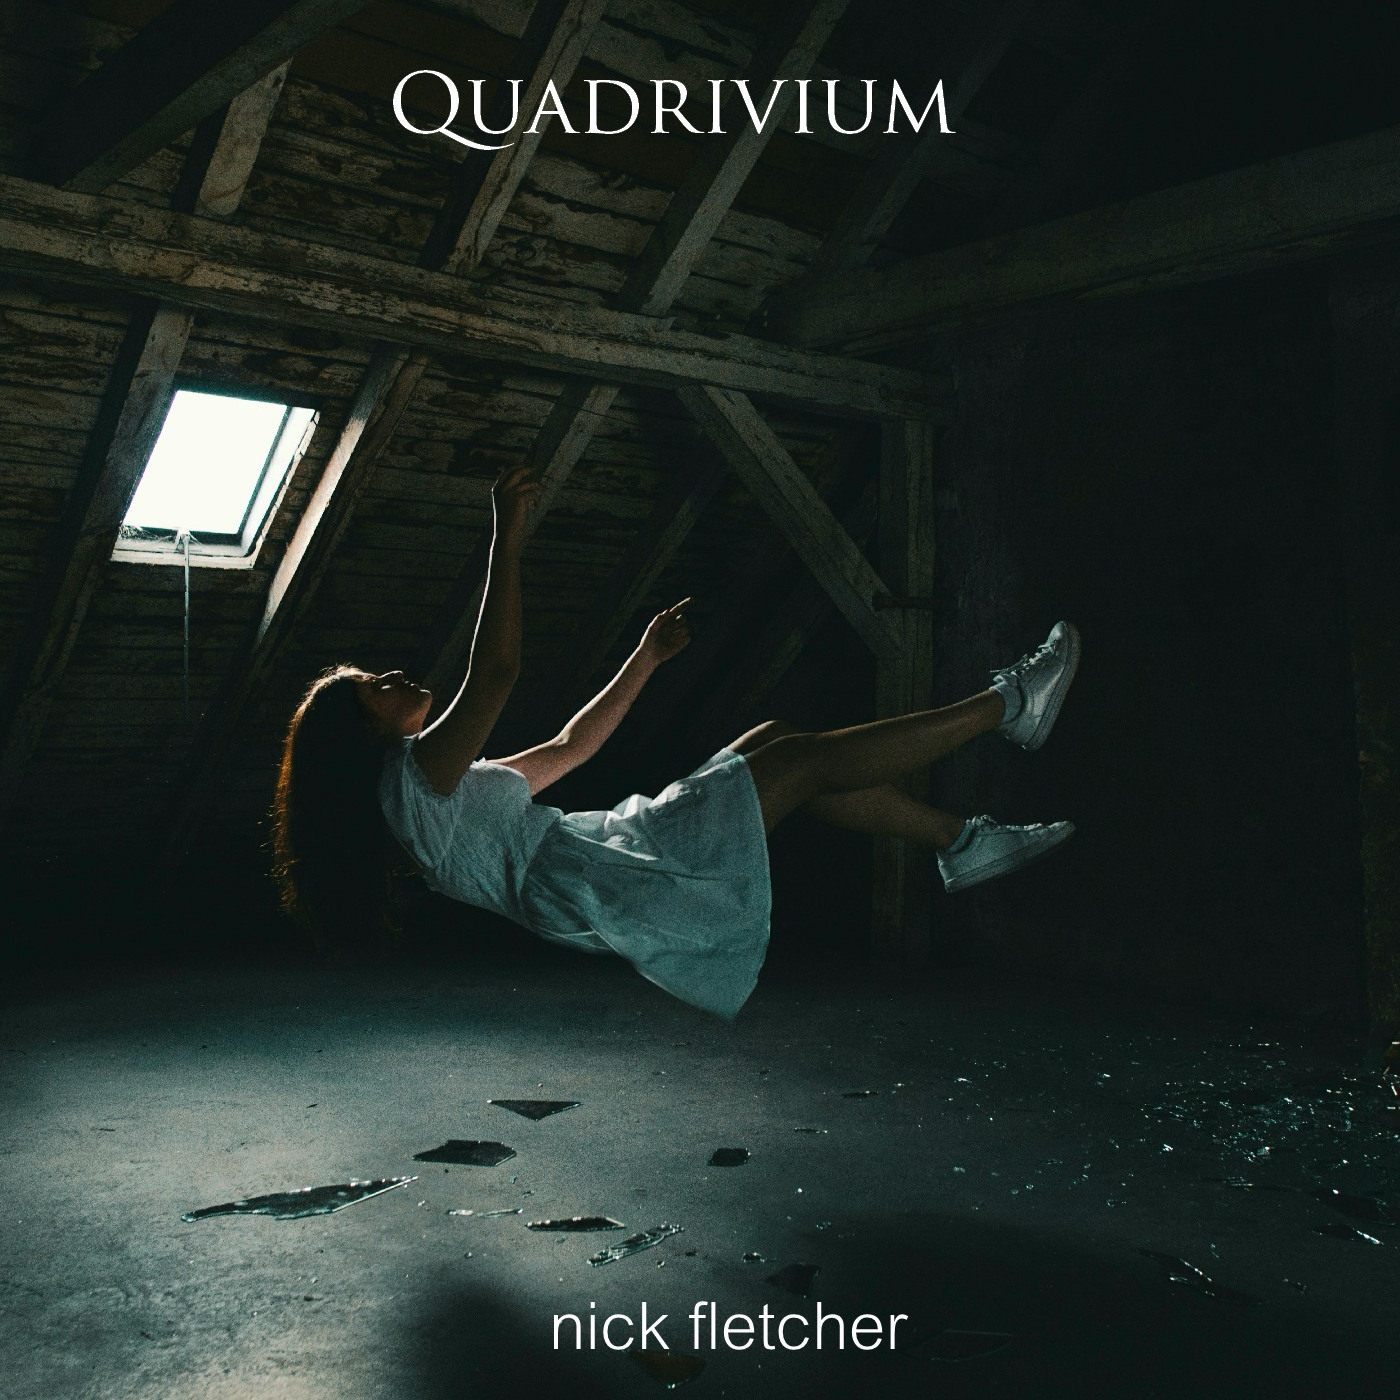 Nick Fletcher – "Quadrivium"